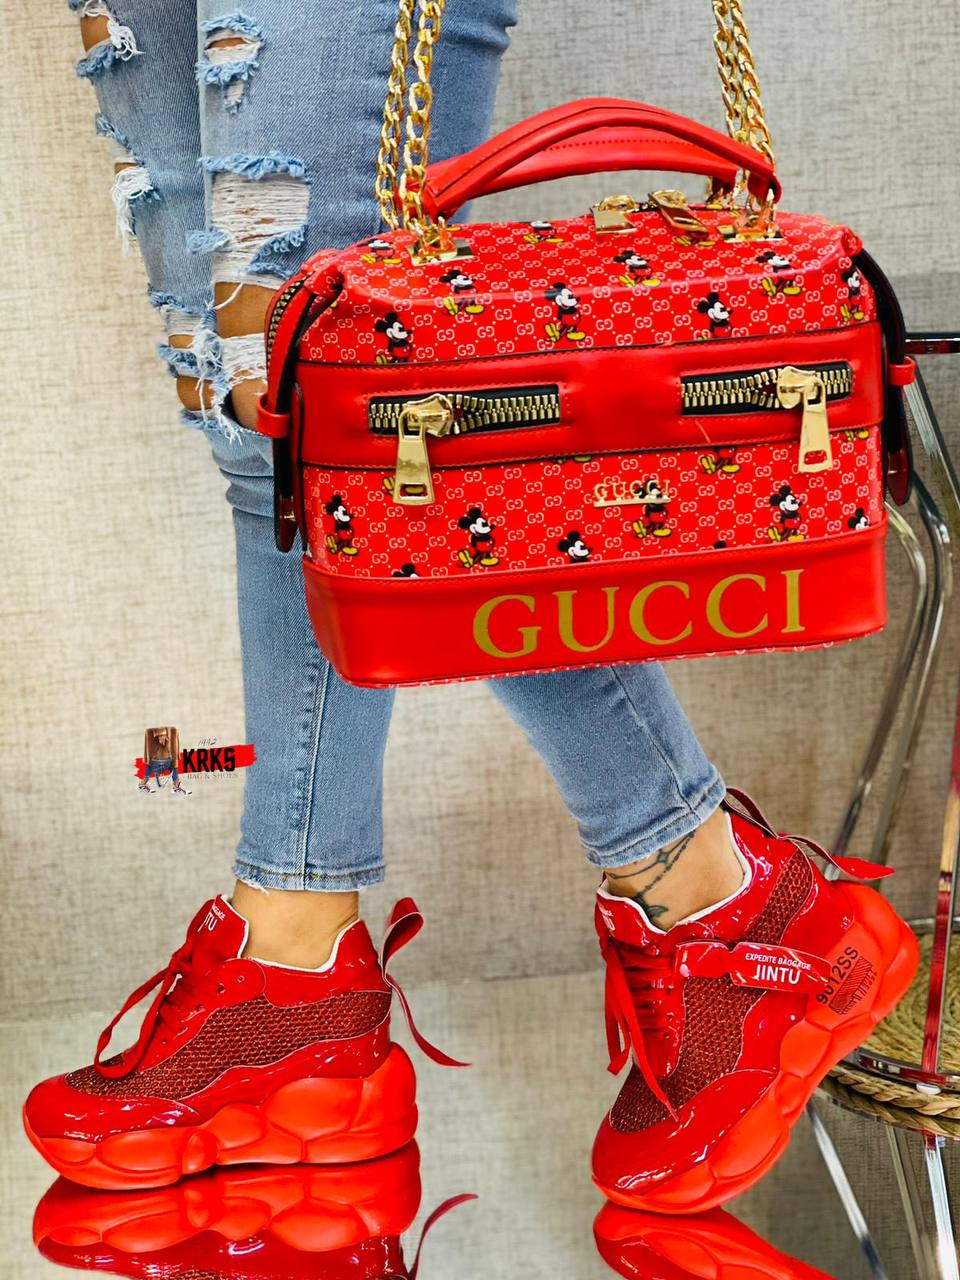 Gucci, Bags, Gucci Handbag And Matching Shoes